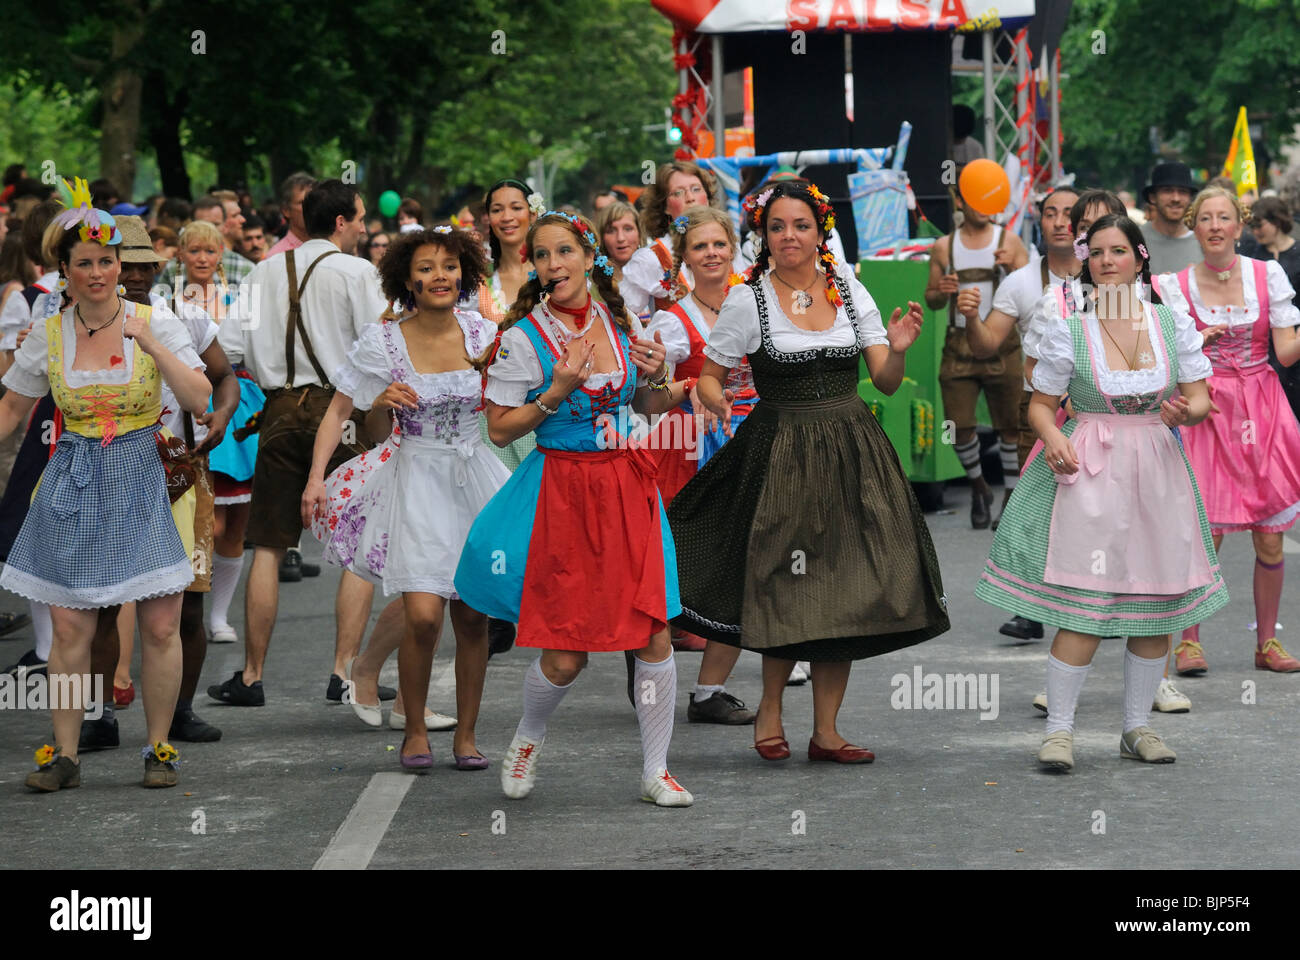 Karneval der Kulturen, il Carnevale delle culture di Berlino, quartiere di Kreuzberg, Germania, Europa Foto Stock